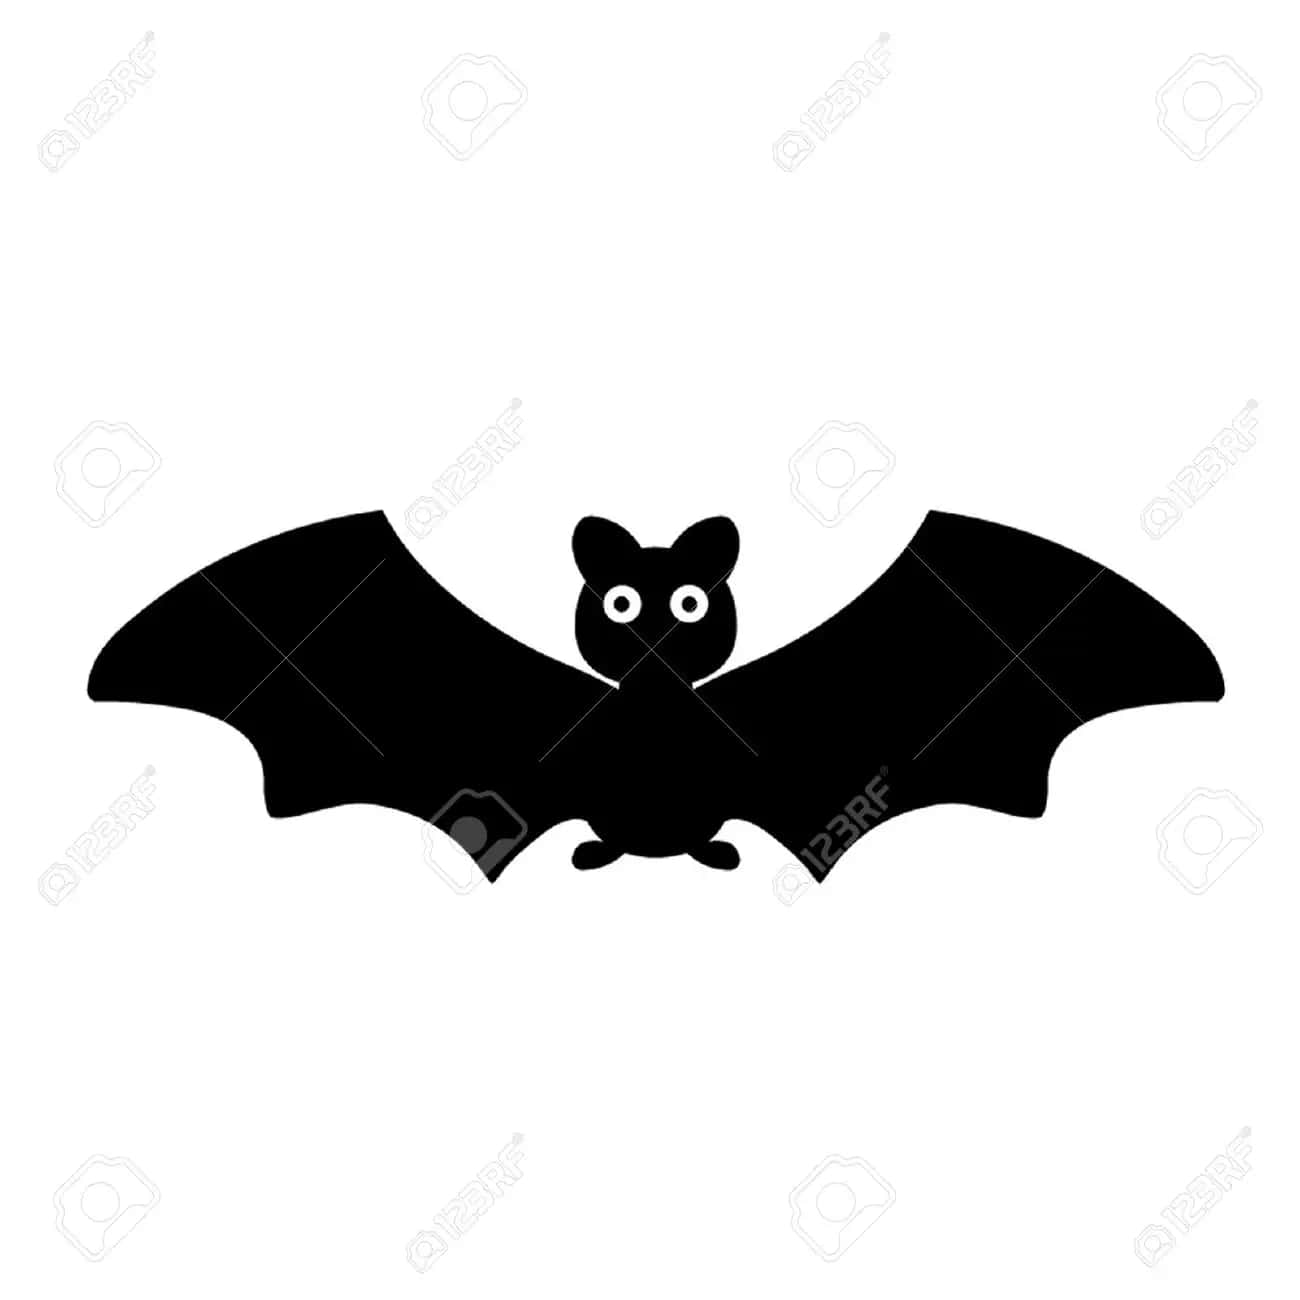 Cute Black Bat Pictures